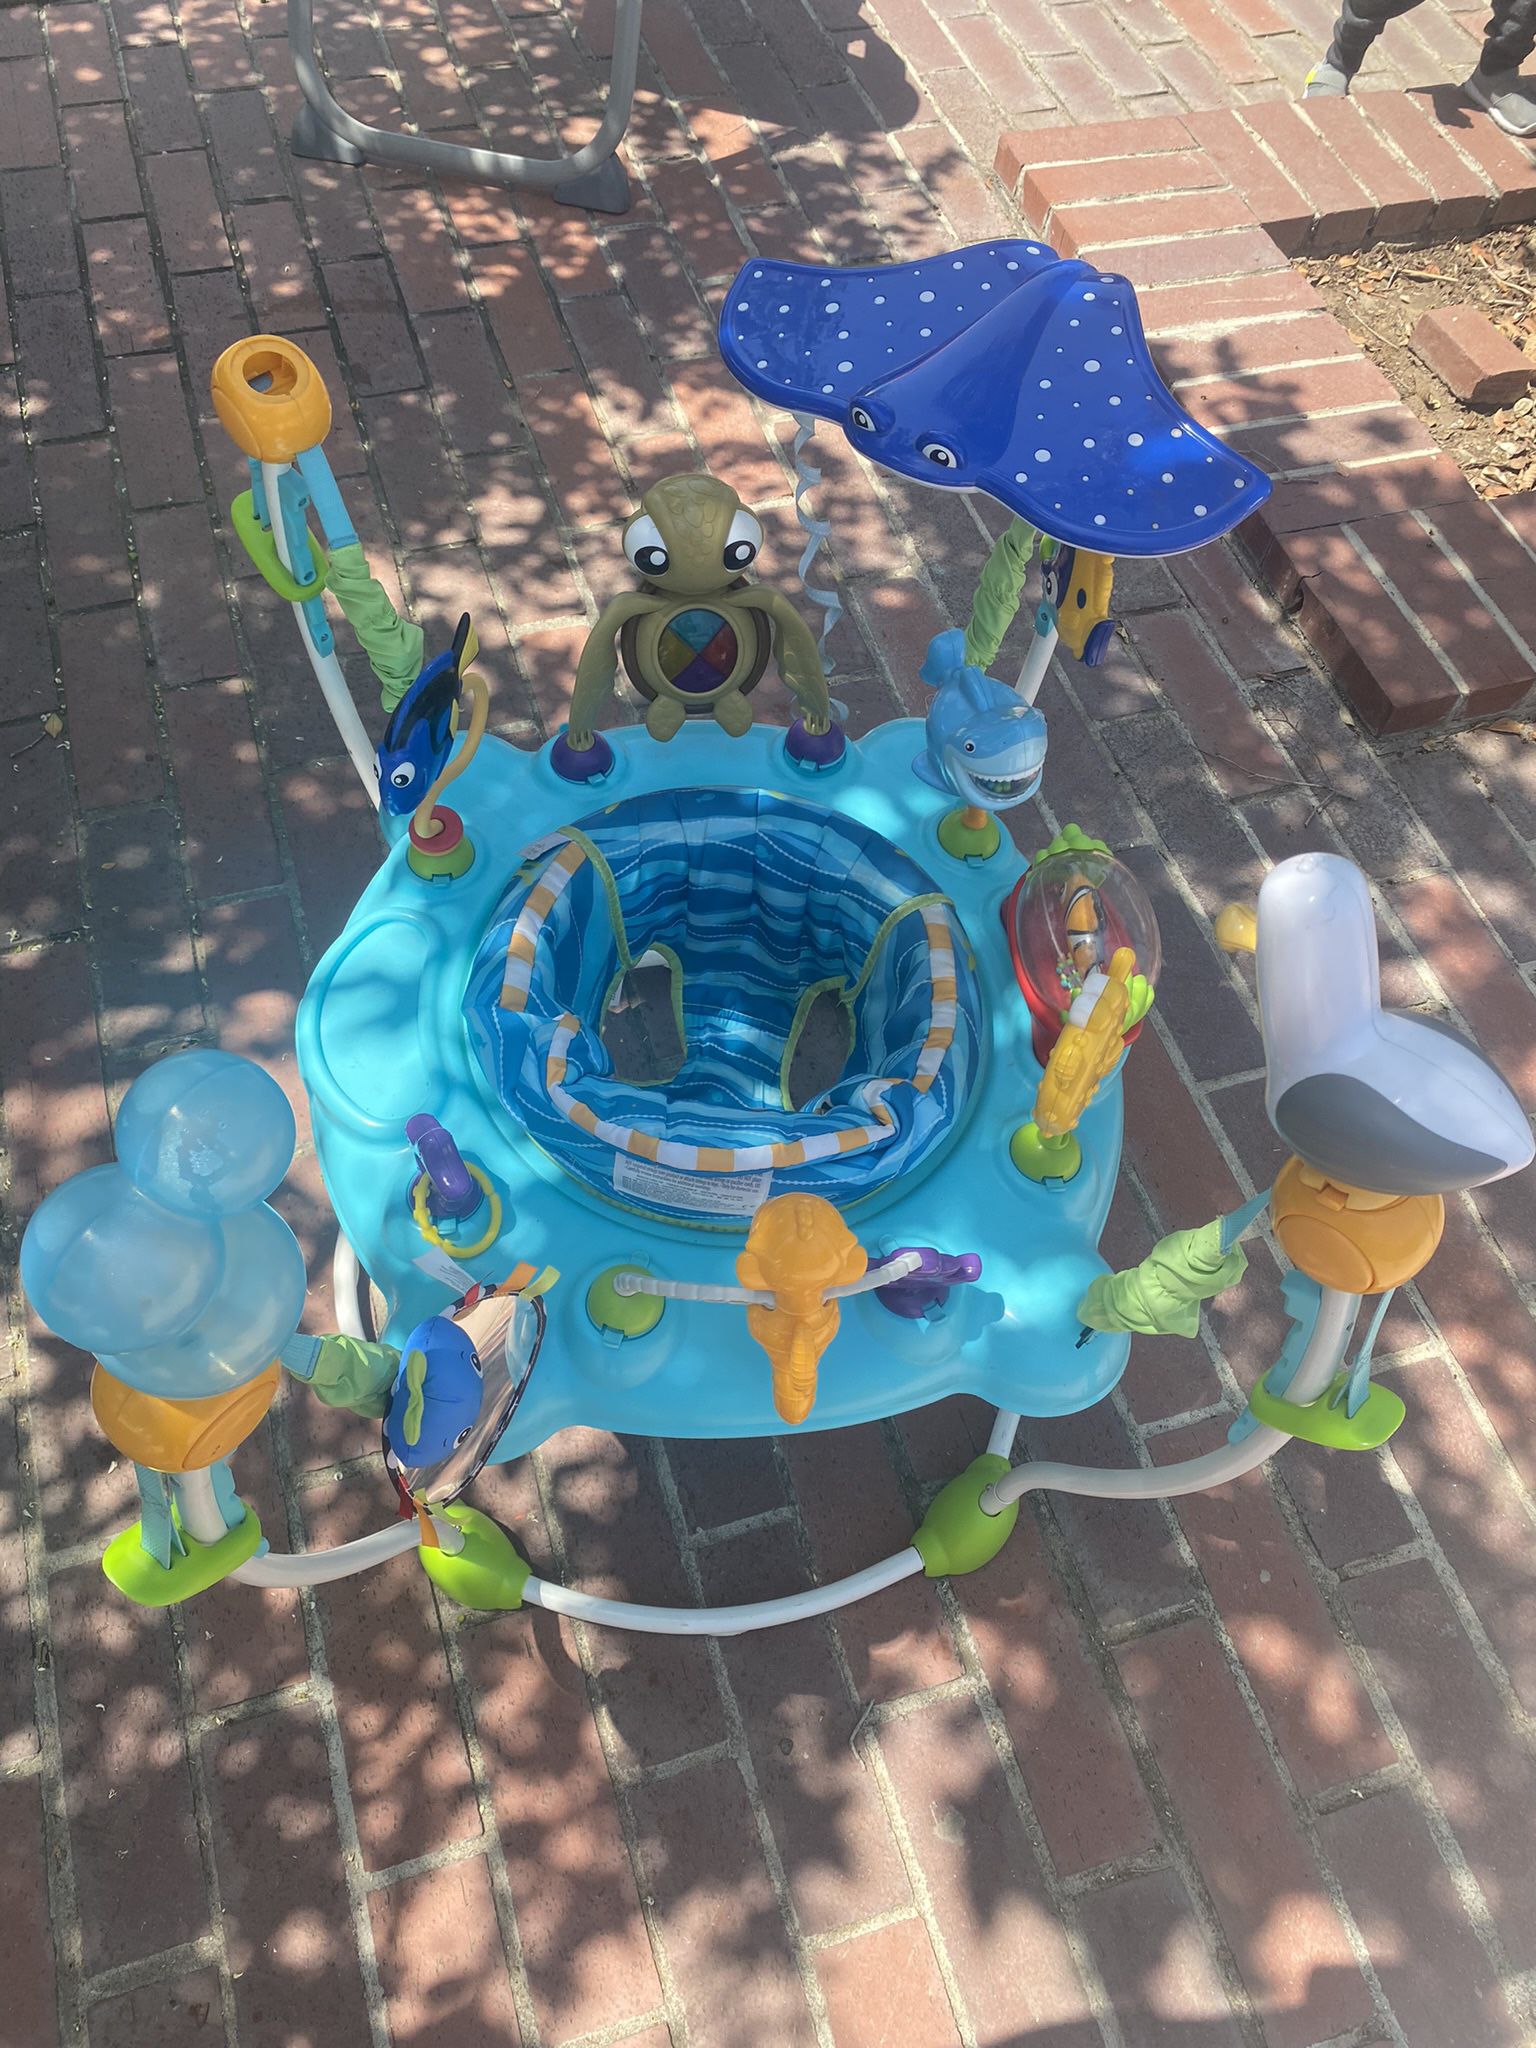 $29 Disney Baby Finding Nemo Sea of Activities Jumper 